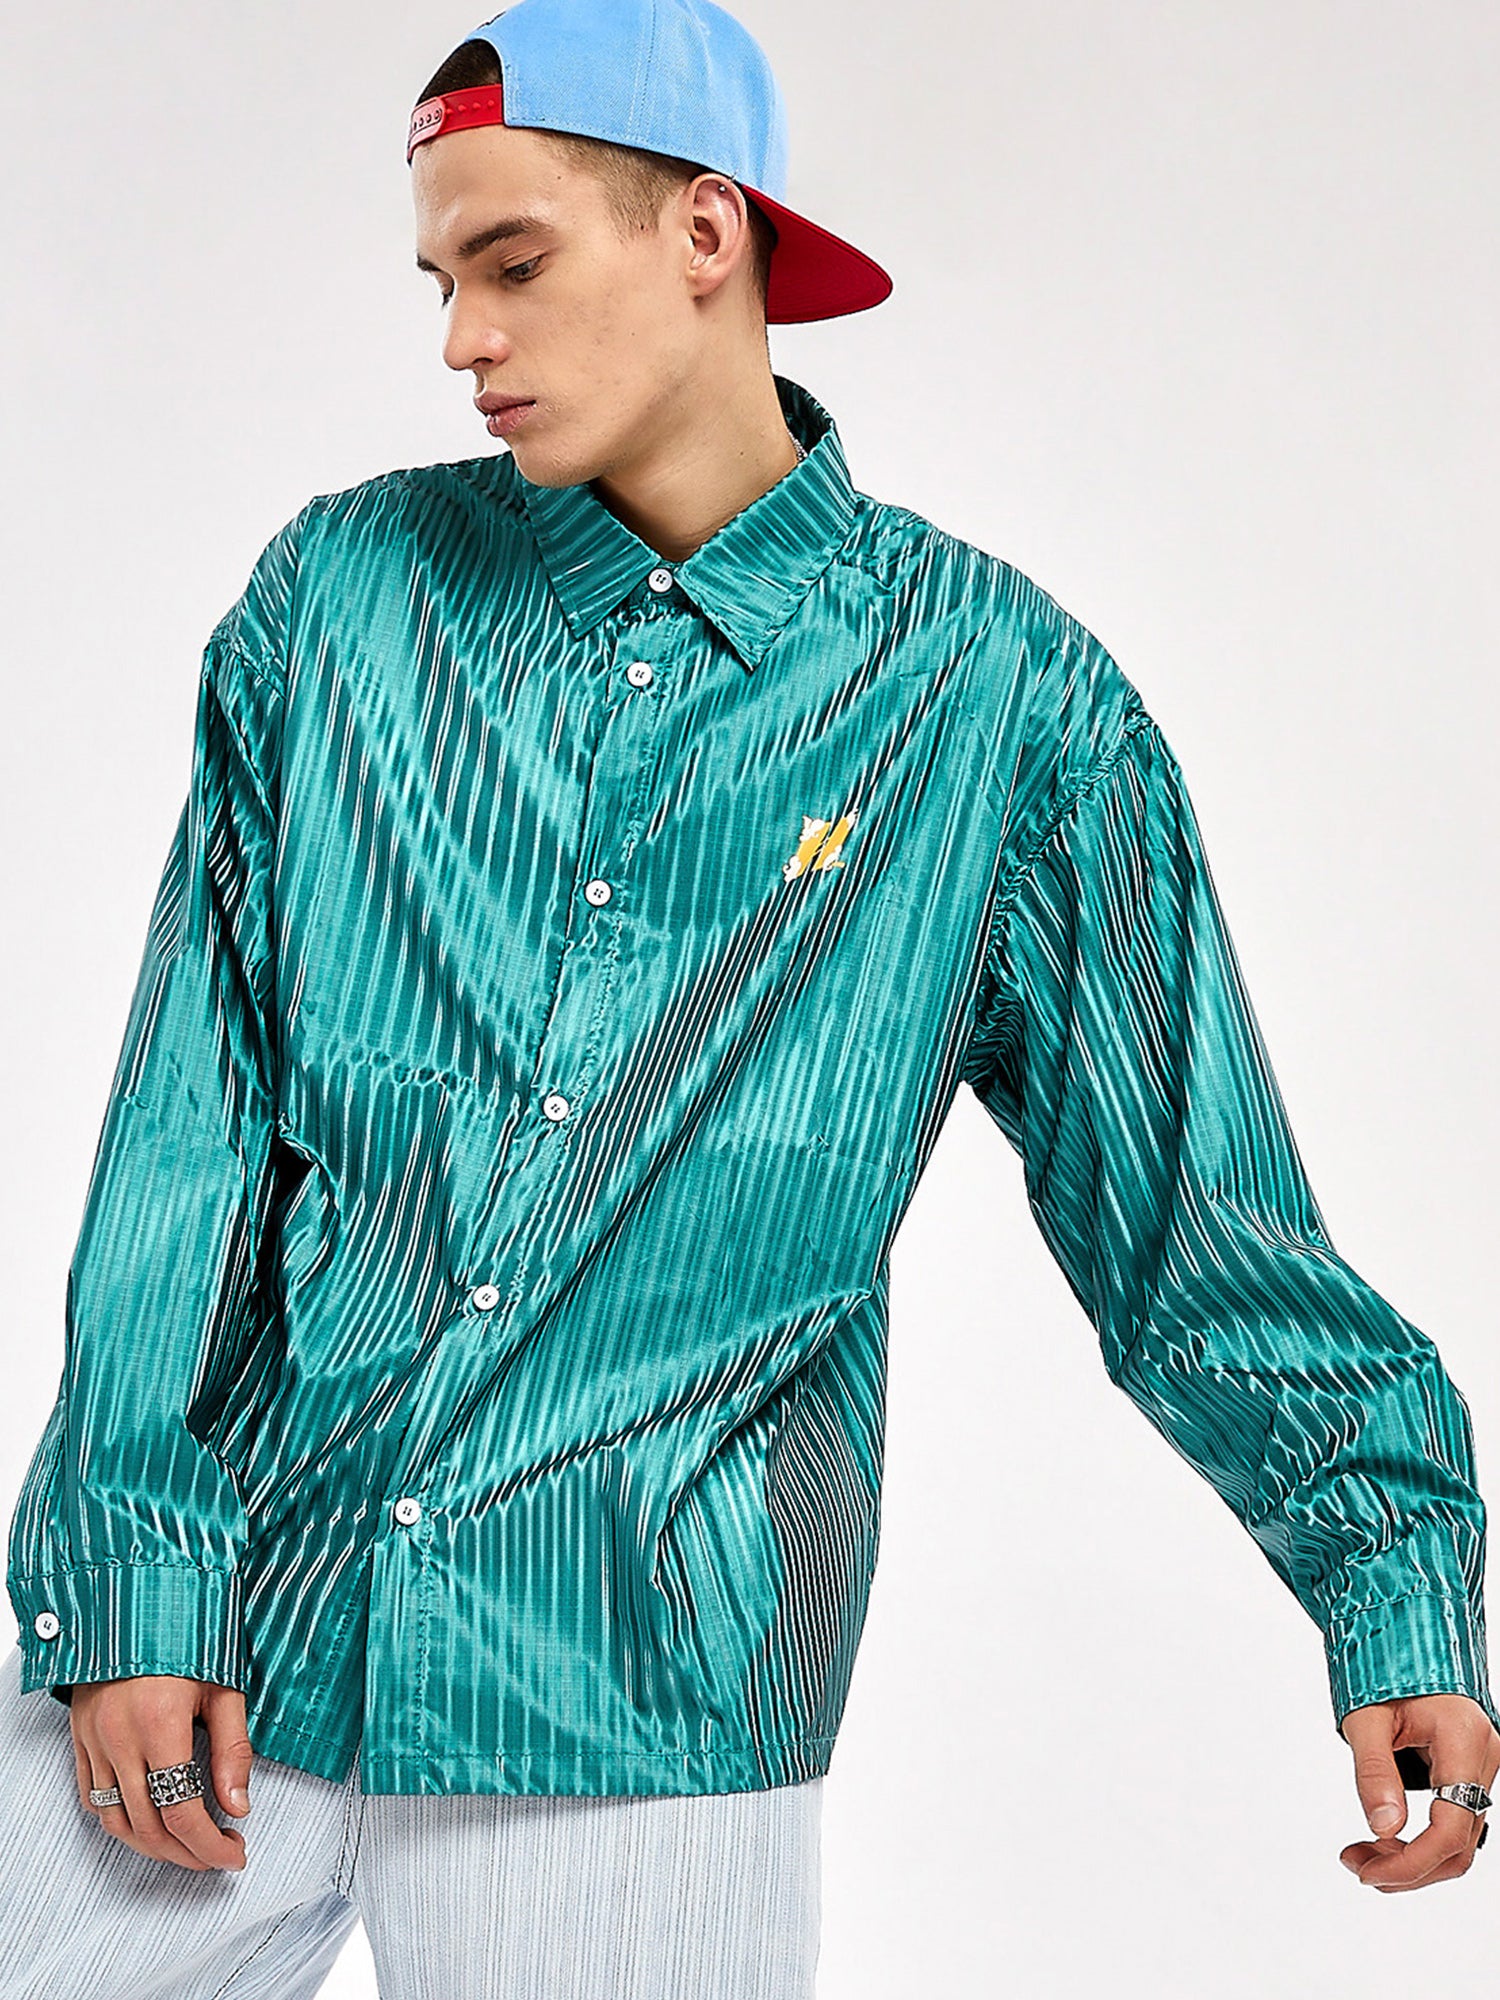 JUSTNOTAG Street Fashion Hiphop Striped Polyester Umlegekragen Grüne Hemden